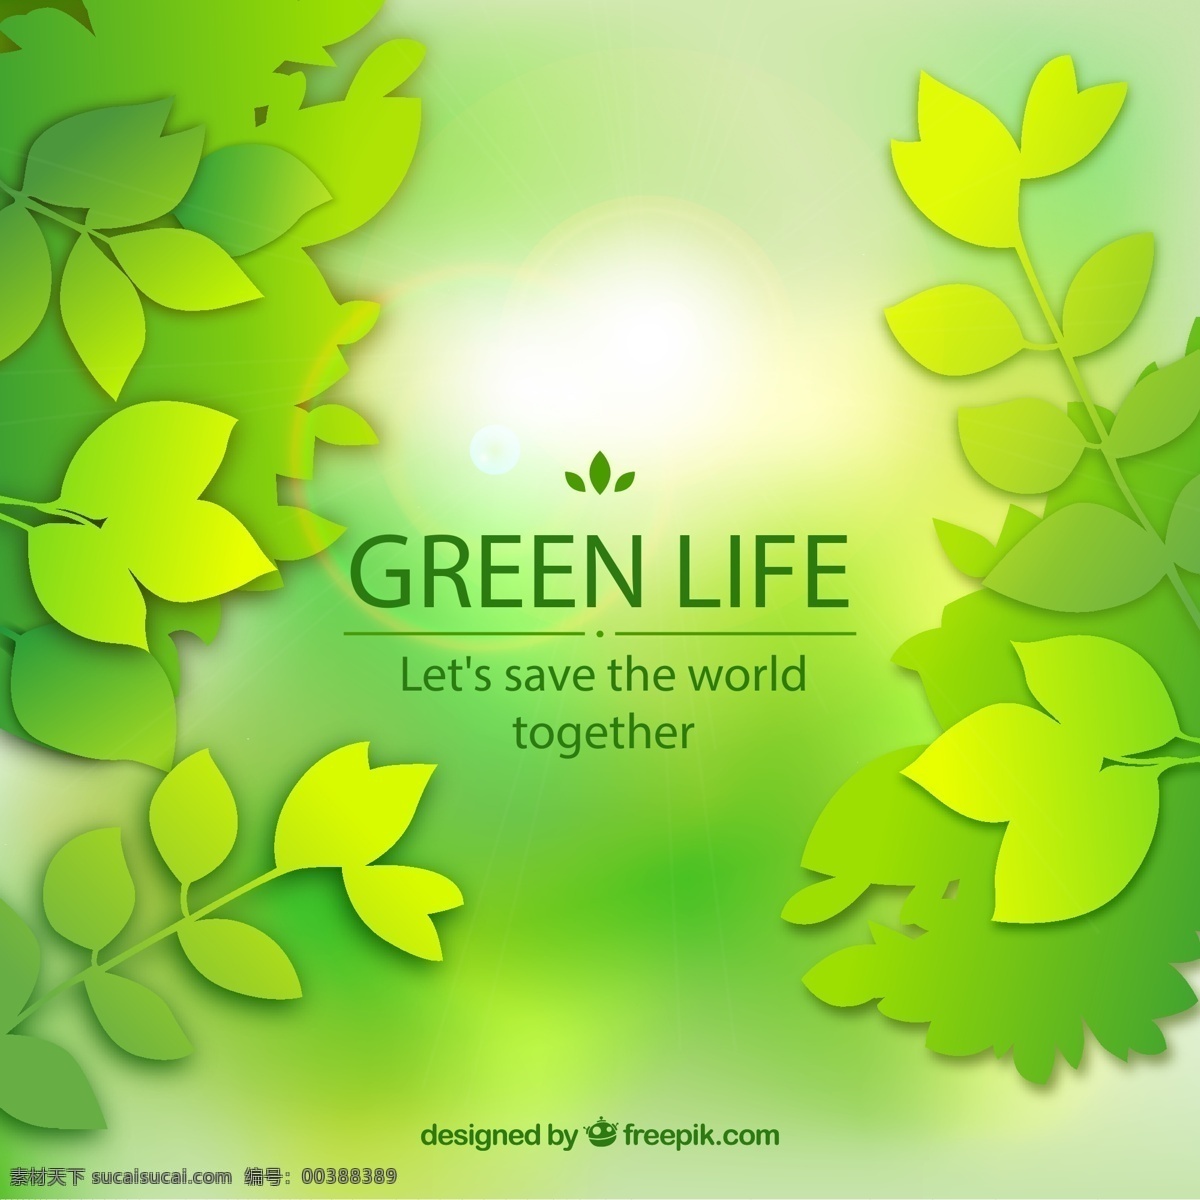 绿色 叶子 背景图片 剪贴 植物 绿叶 矢量图 格式 矢量 高清图片